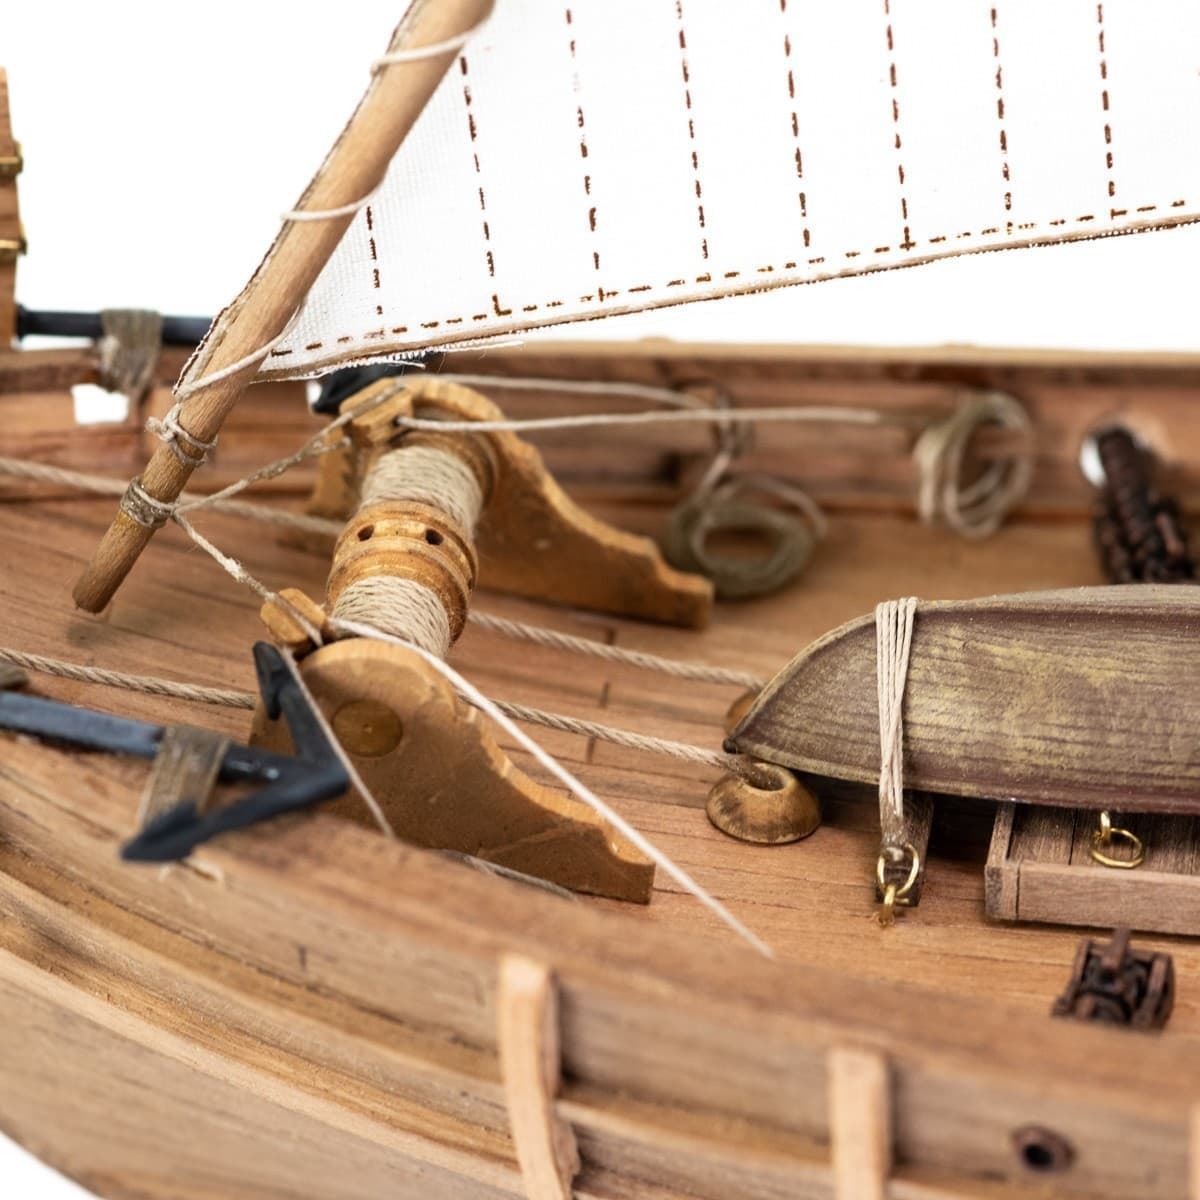 Maqueta barco de madera: Carabela Niña - Imagen 7